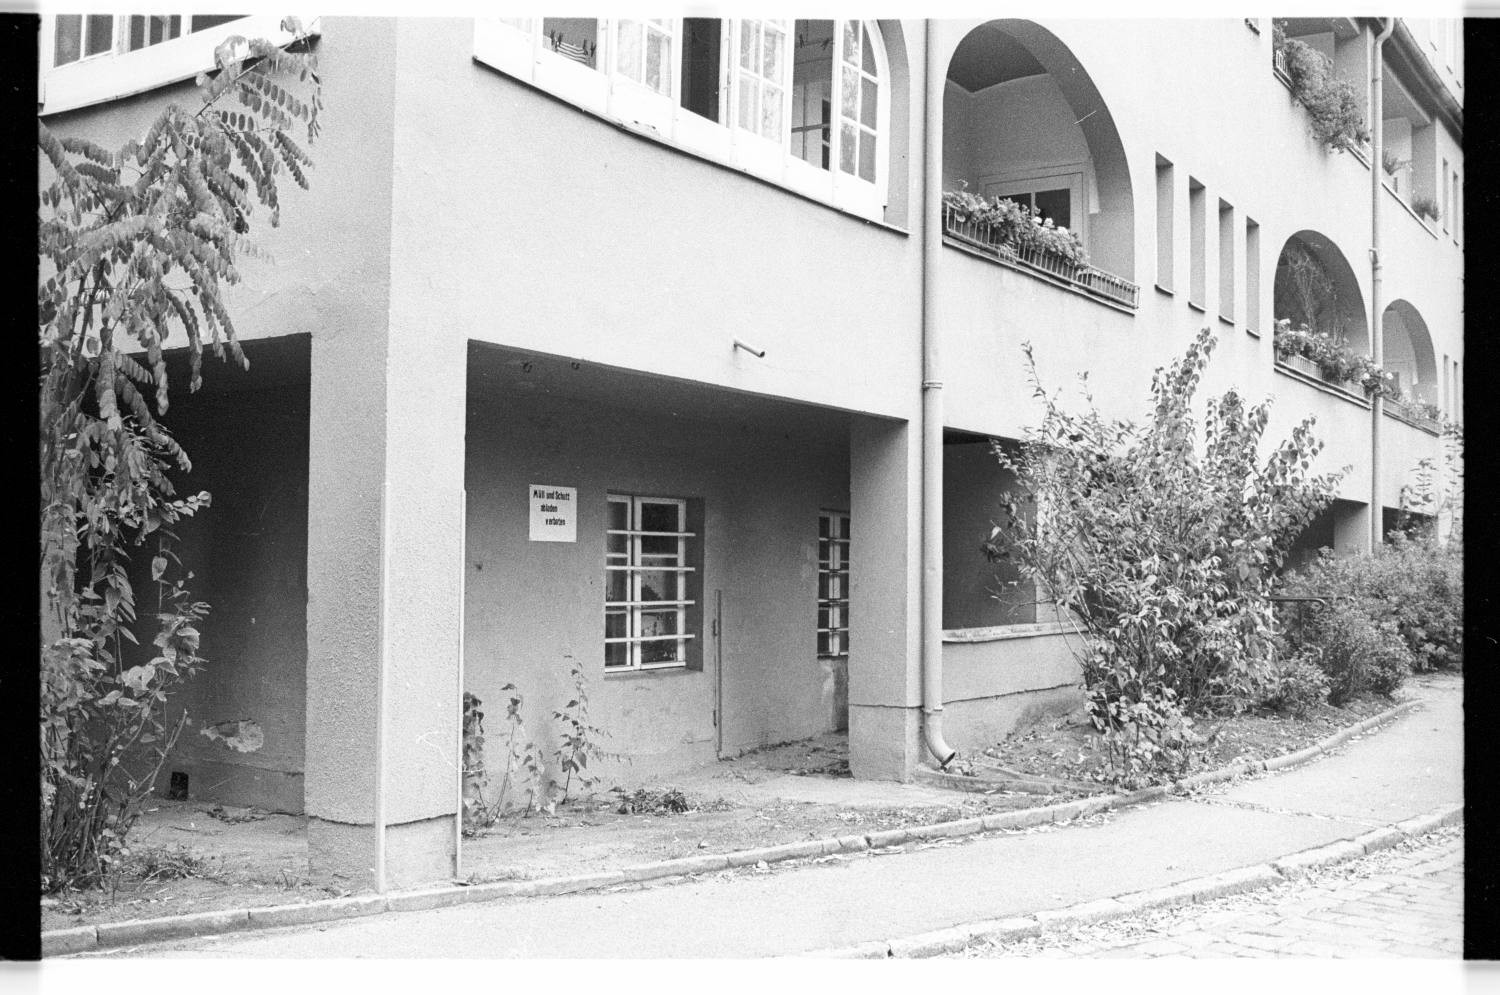 Kleinbildnegative: Wohnsiedlung "Lindenhof", 1983 (Museen Tempelhof-Schöneberg/Jürgen Henschel RR-F)